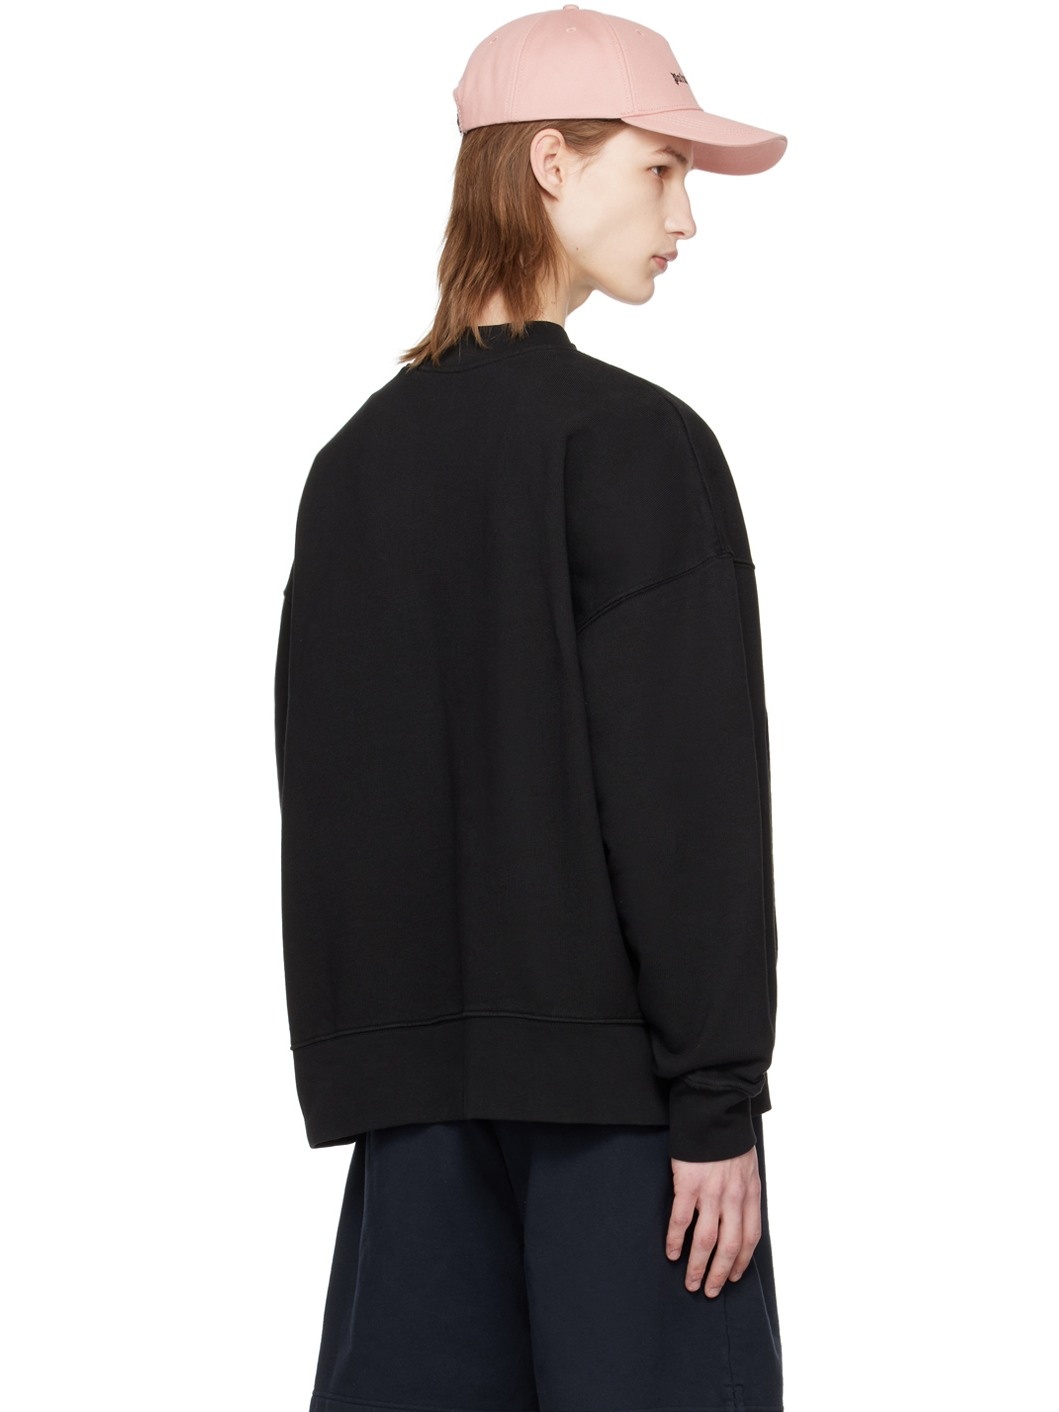 Black Printed Sweatshirt - 3